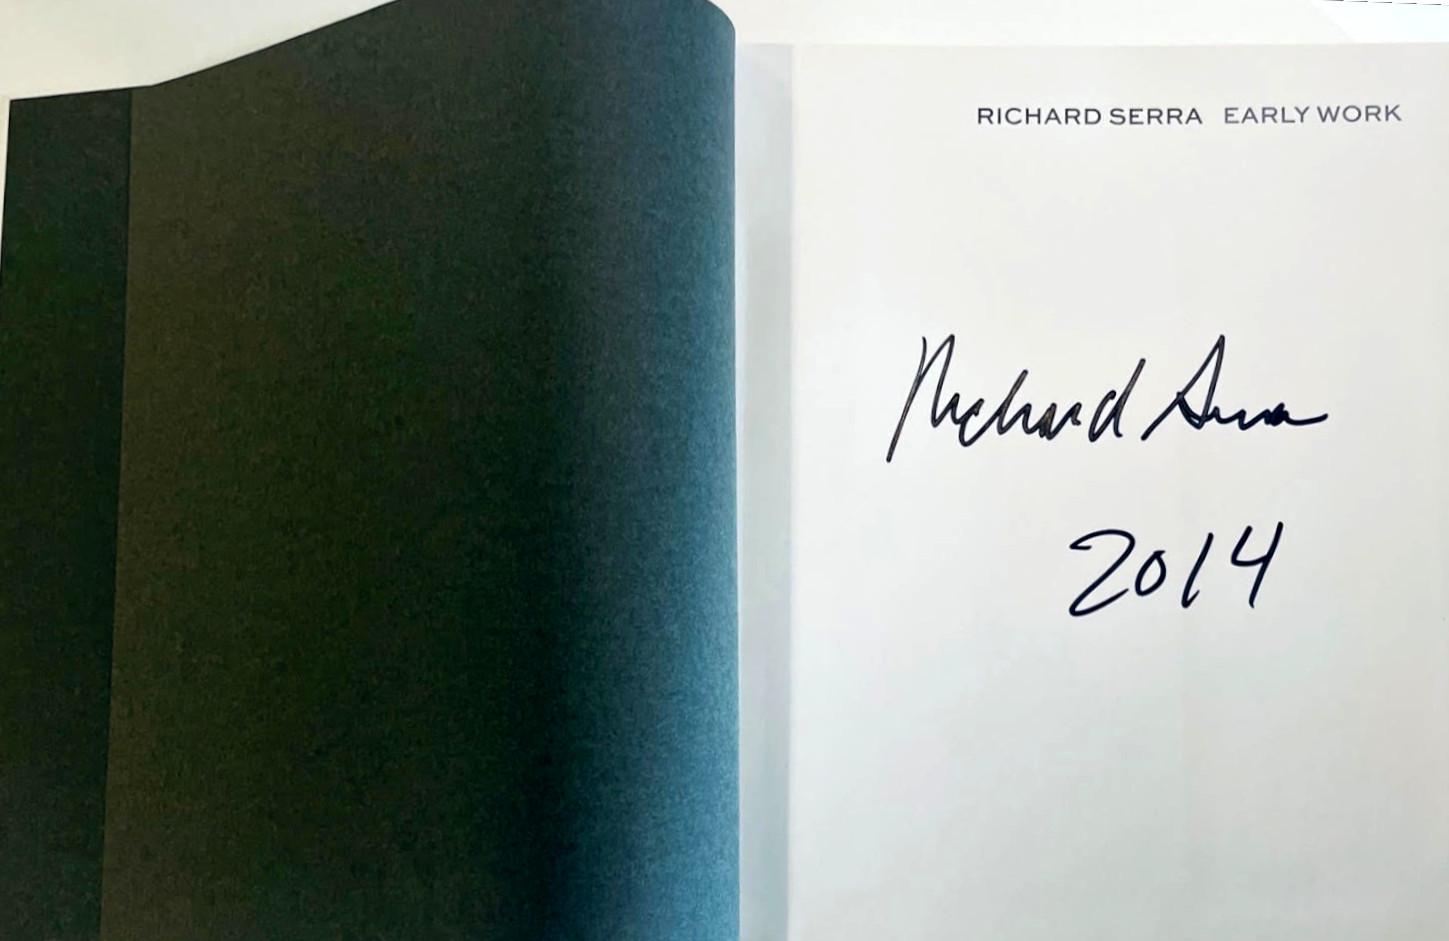 Richard Serra Frühes Werk (handsigniert und datiert von Richard Serra), 2013
Gebundene Monografie ohne Schutzumschlag (handsigniert und datiert 2014 von Richard Serra)
 Handsigniert und datiert 2014 von Richard Serra auf dem Titelblatt
12 × 10 × 1